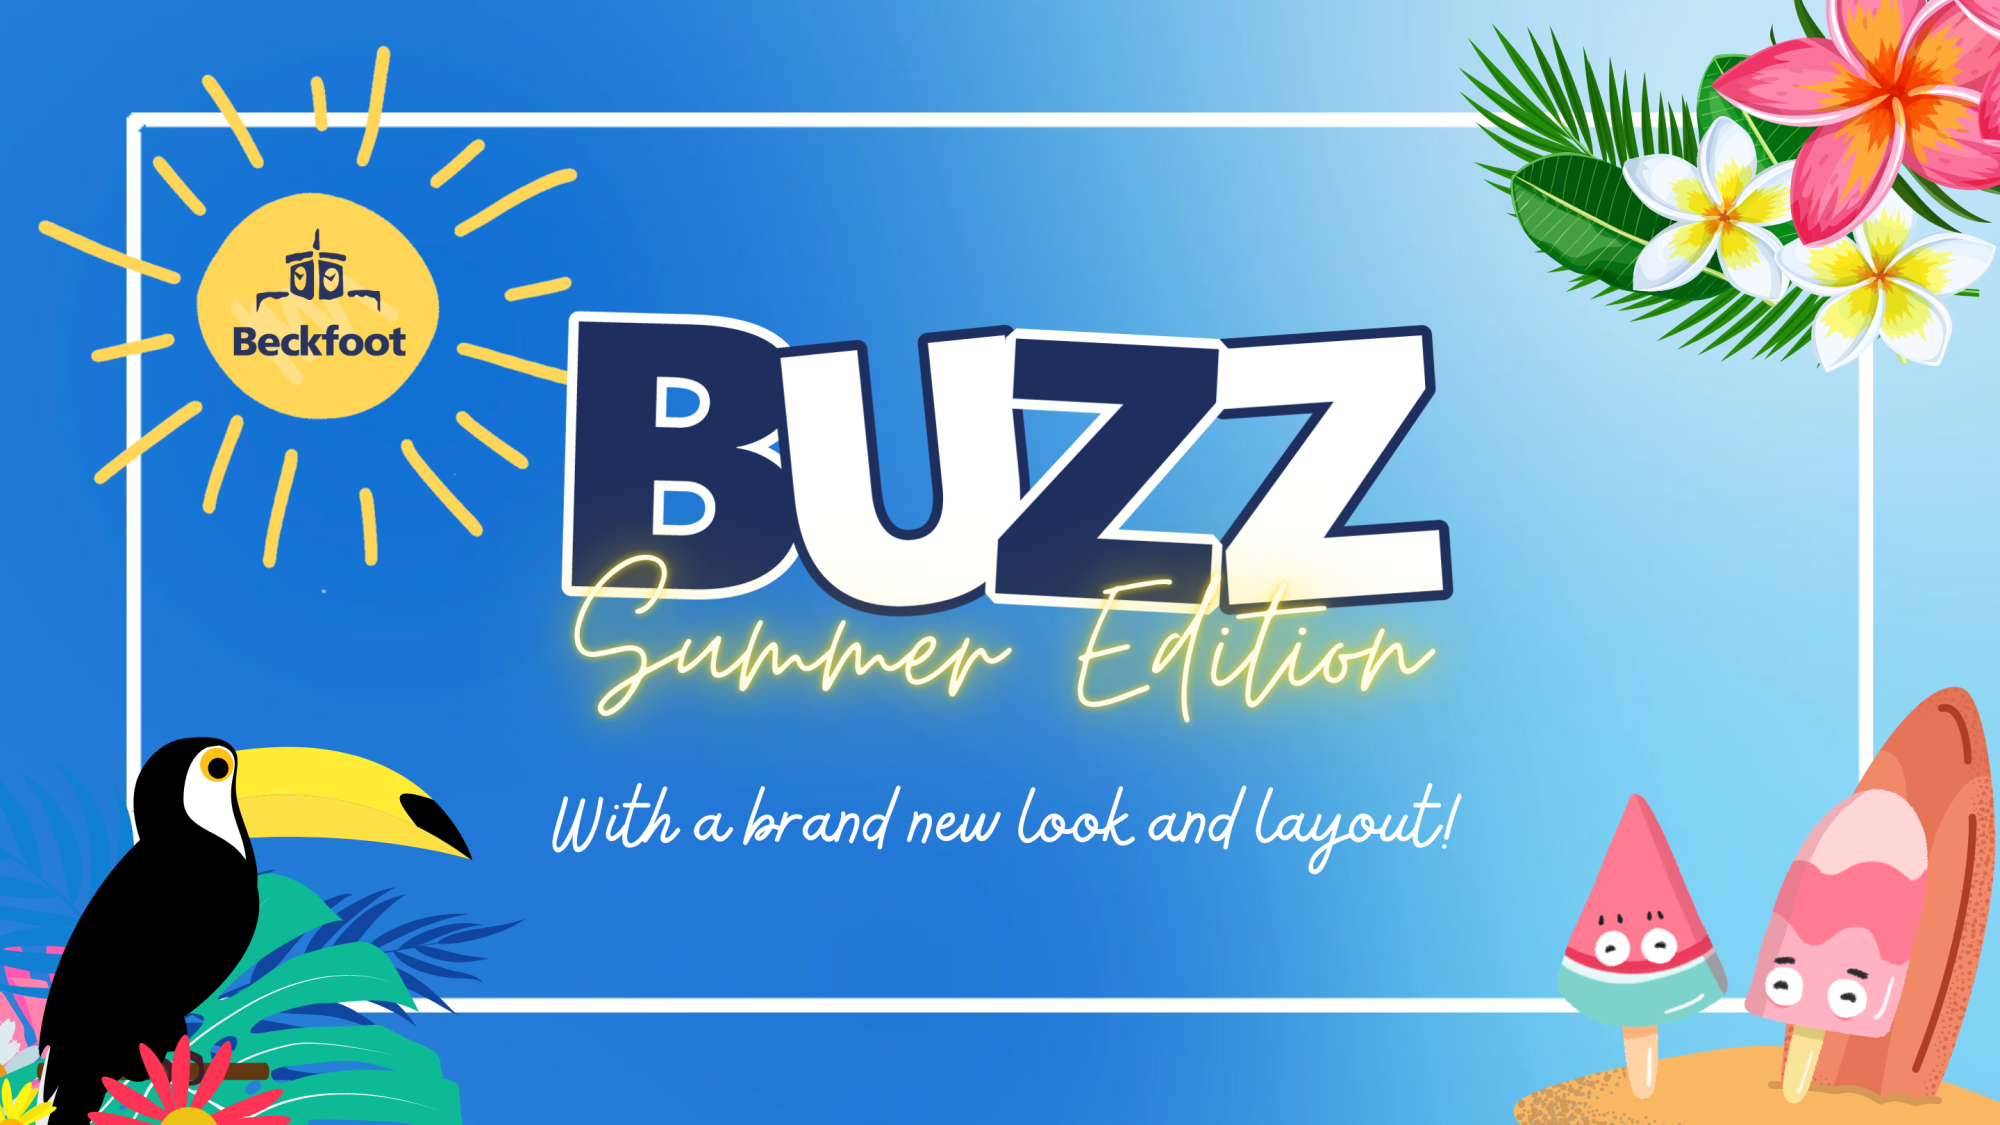 Buzz - Summer 22